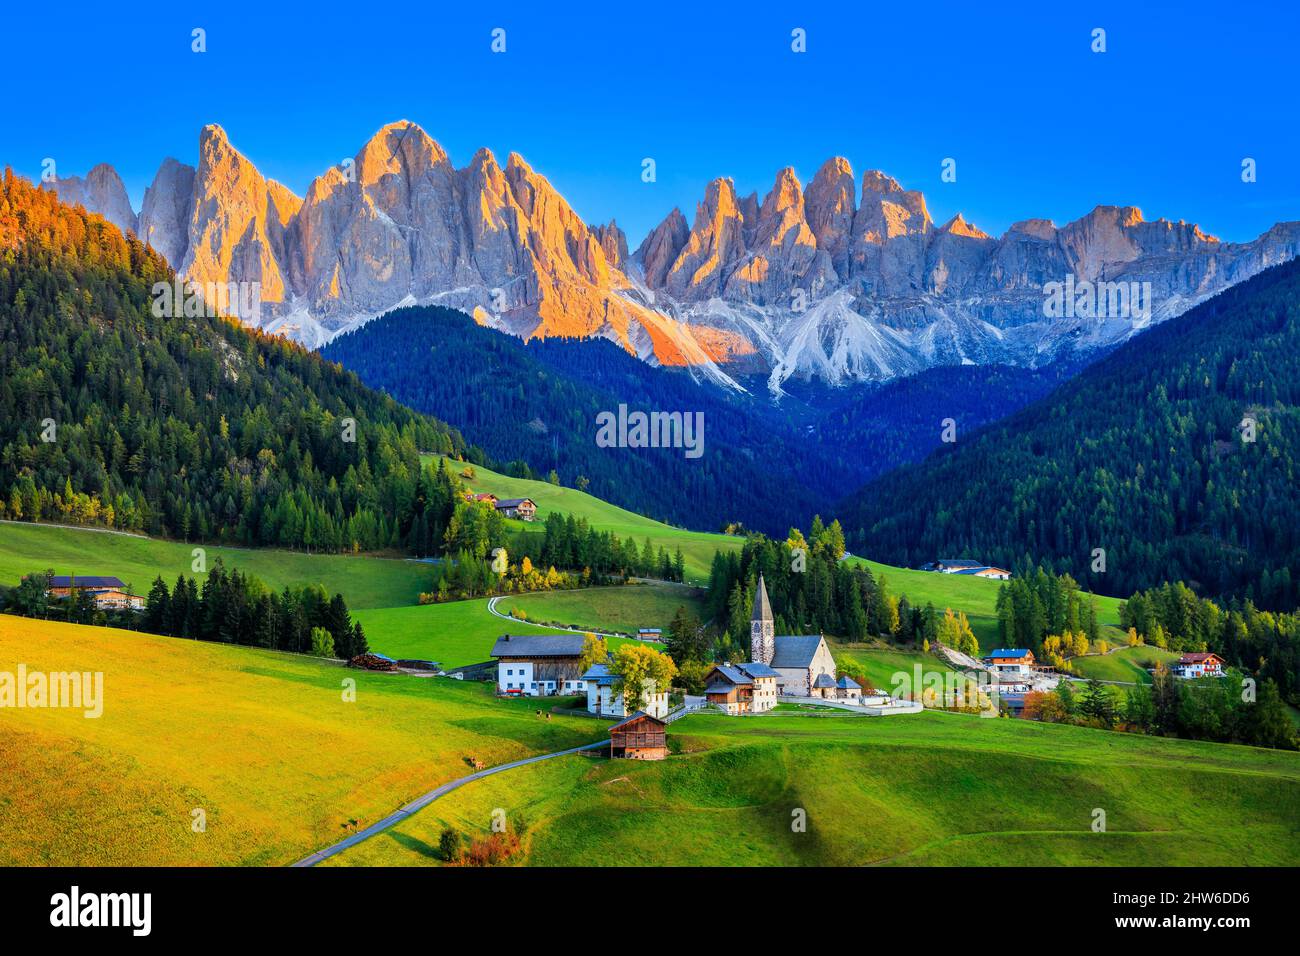 Val di Funes, Dolomiti, Italia. Villaggio di Santa Maddalena di fronte al gruppo montuoso Odle (Geisler). Foto Stock